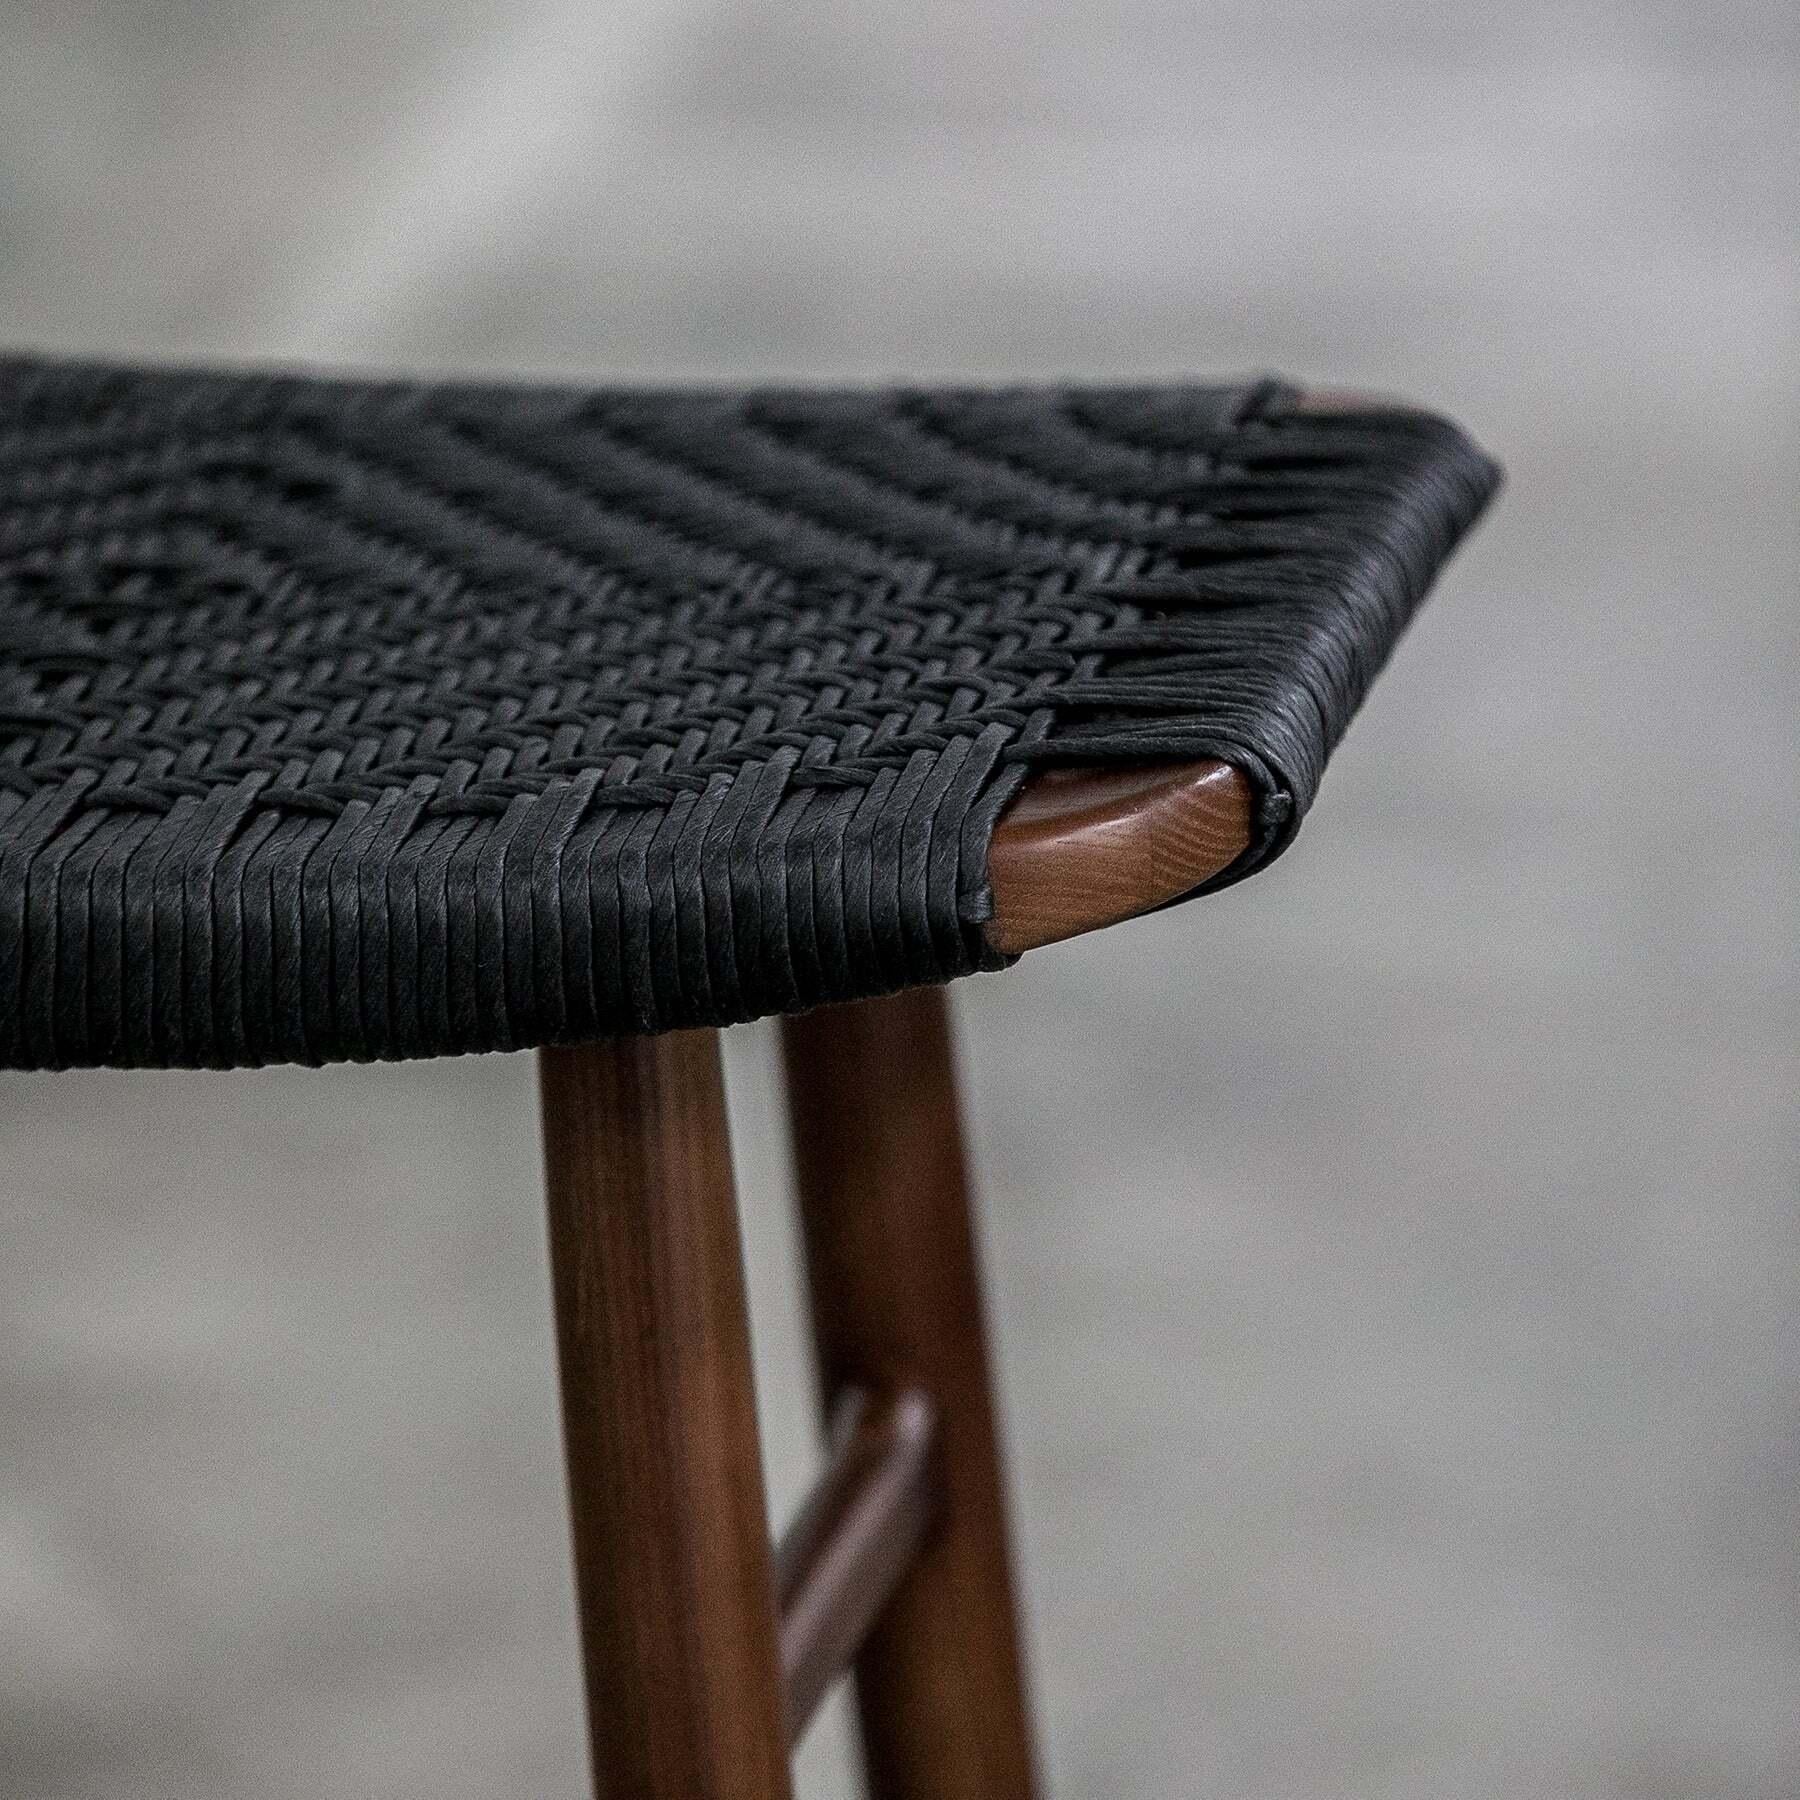 Freja est une collection de tabourets et de bancs née de la volonté de créer des meubles sculpturaux présentant l'attrait visuel apaisant des traditions de fabrication de meubles scandinaves et un mode d'expression japonais. Les principes